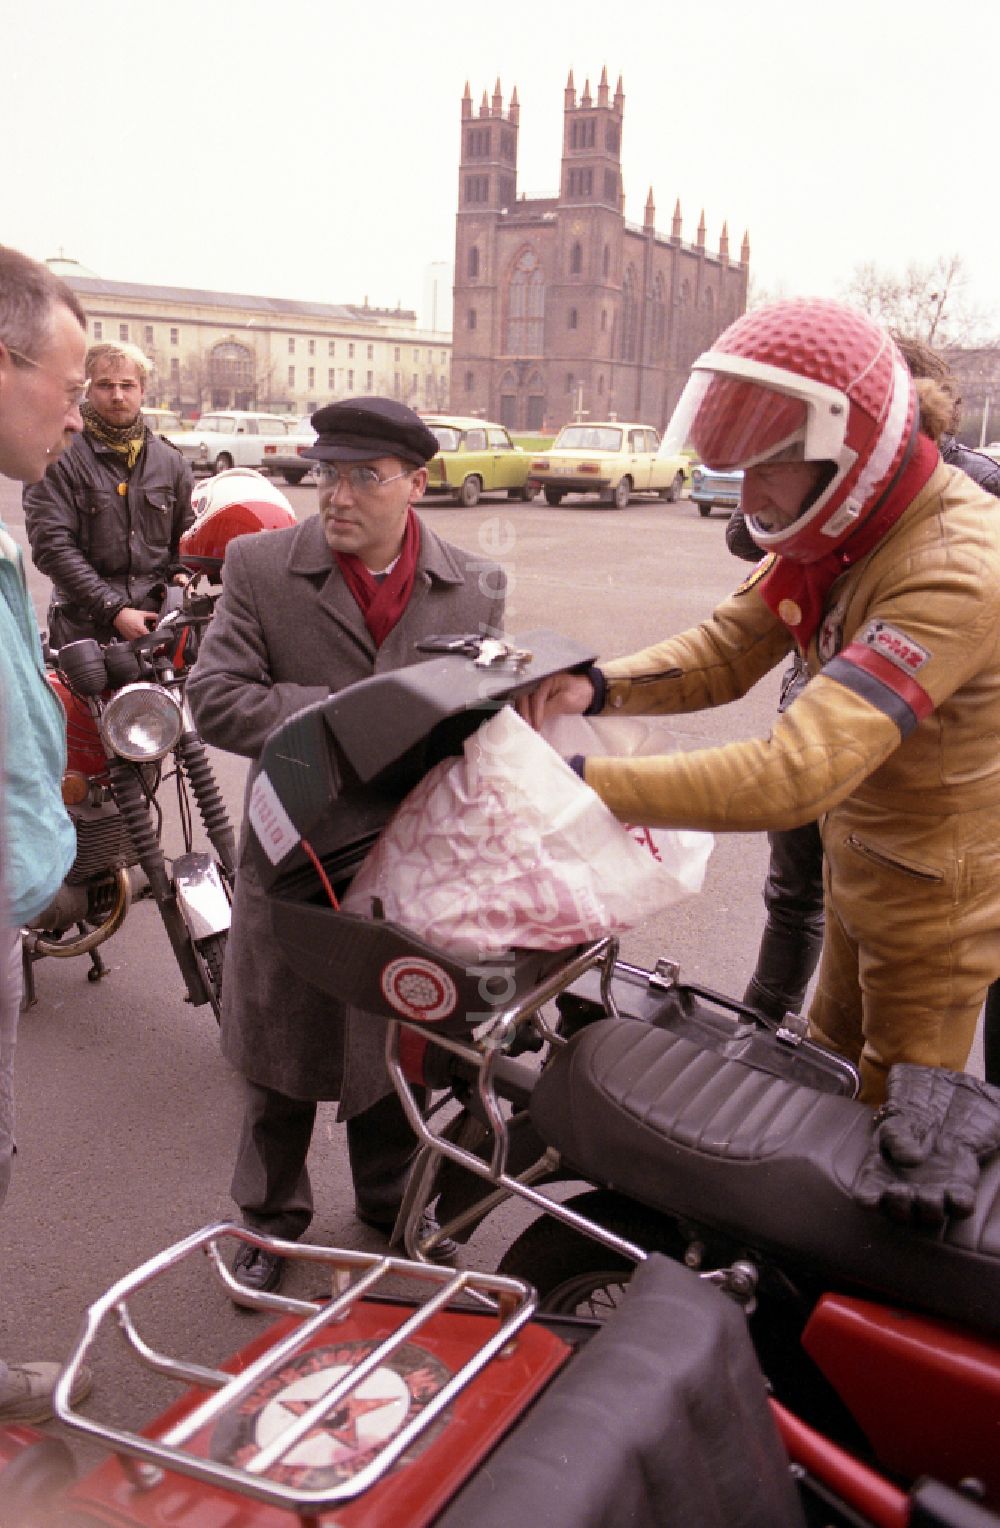 DDR-Bildarchiv: Berlin - Politiker Gregor Gysi mit einem Motorrad MZ in Berlin in der DDR